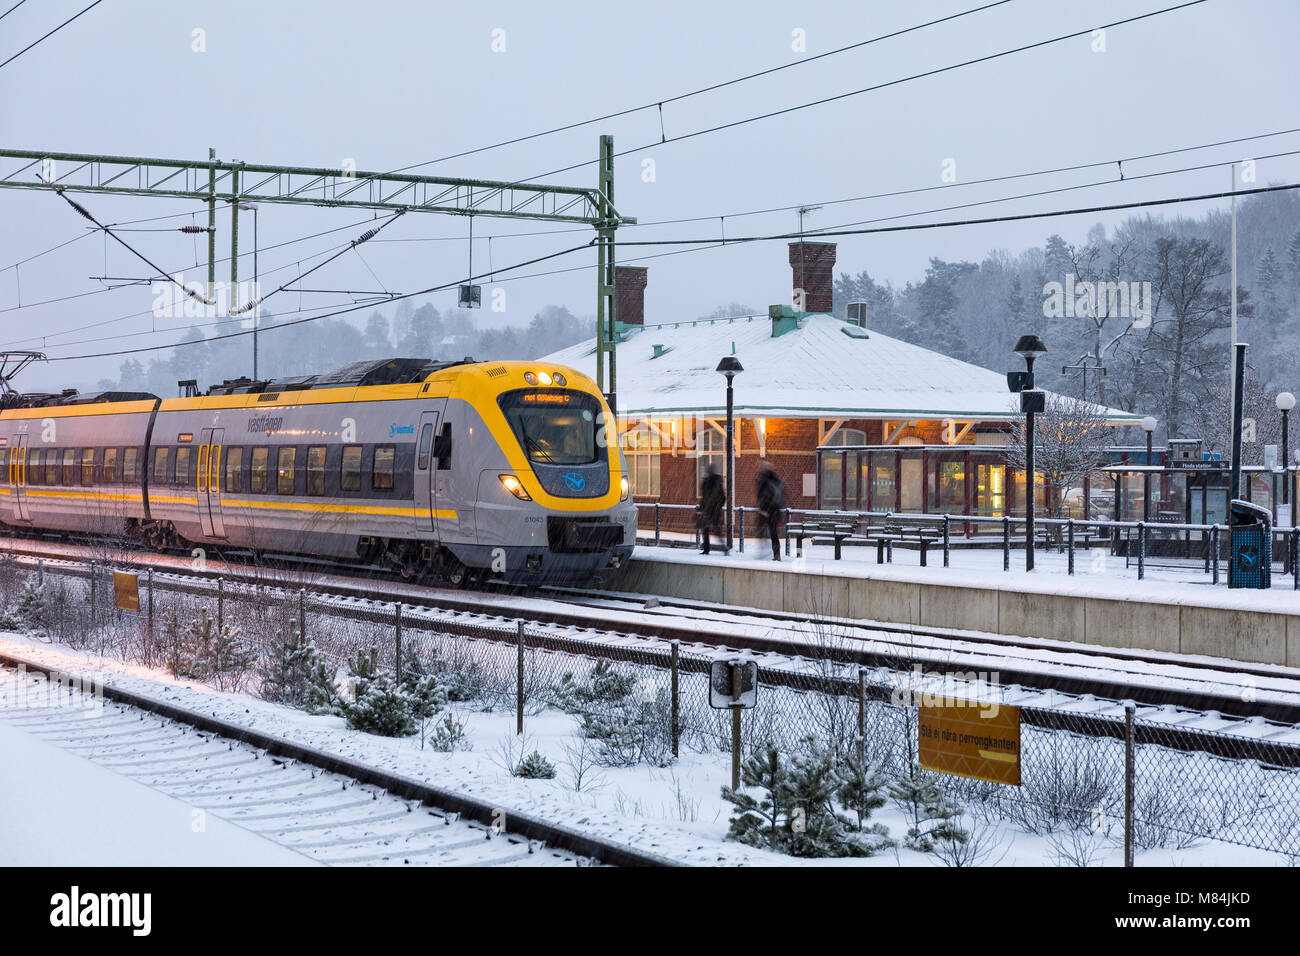 FLODA, Svezia - 16 febbraio: Moderna commuter rail treno passeggeri o ferrovia suburbana a stazione ferroviaria di neve durante l'inverno modello di rilascio: No. Proprietà di rilascio: No. Foto Stock